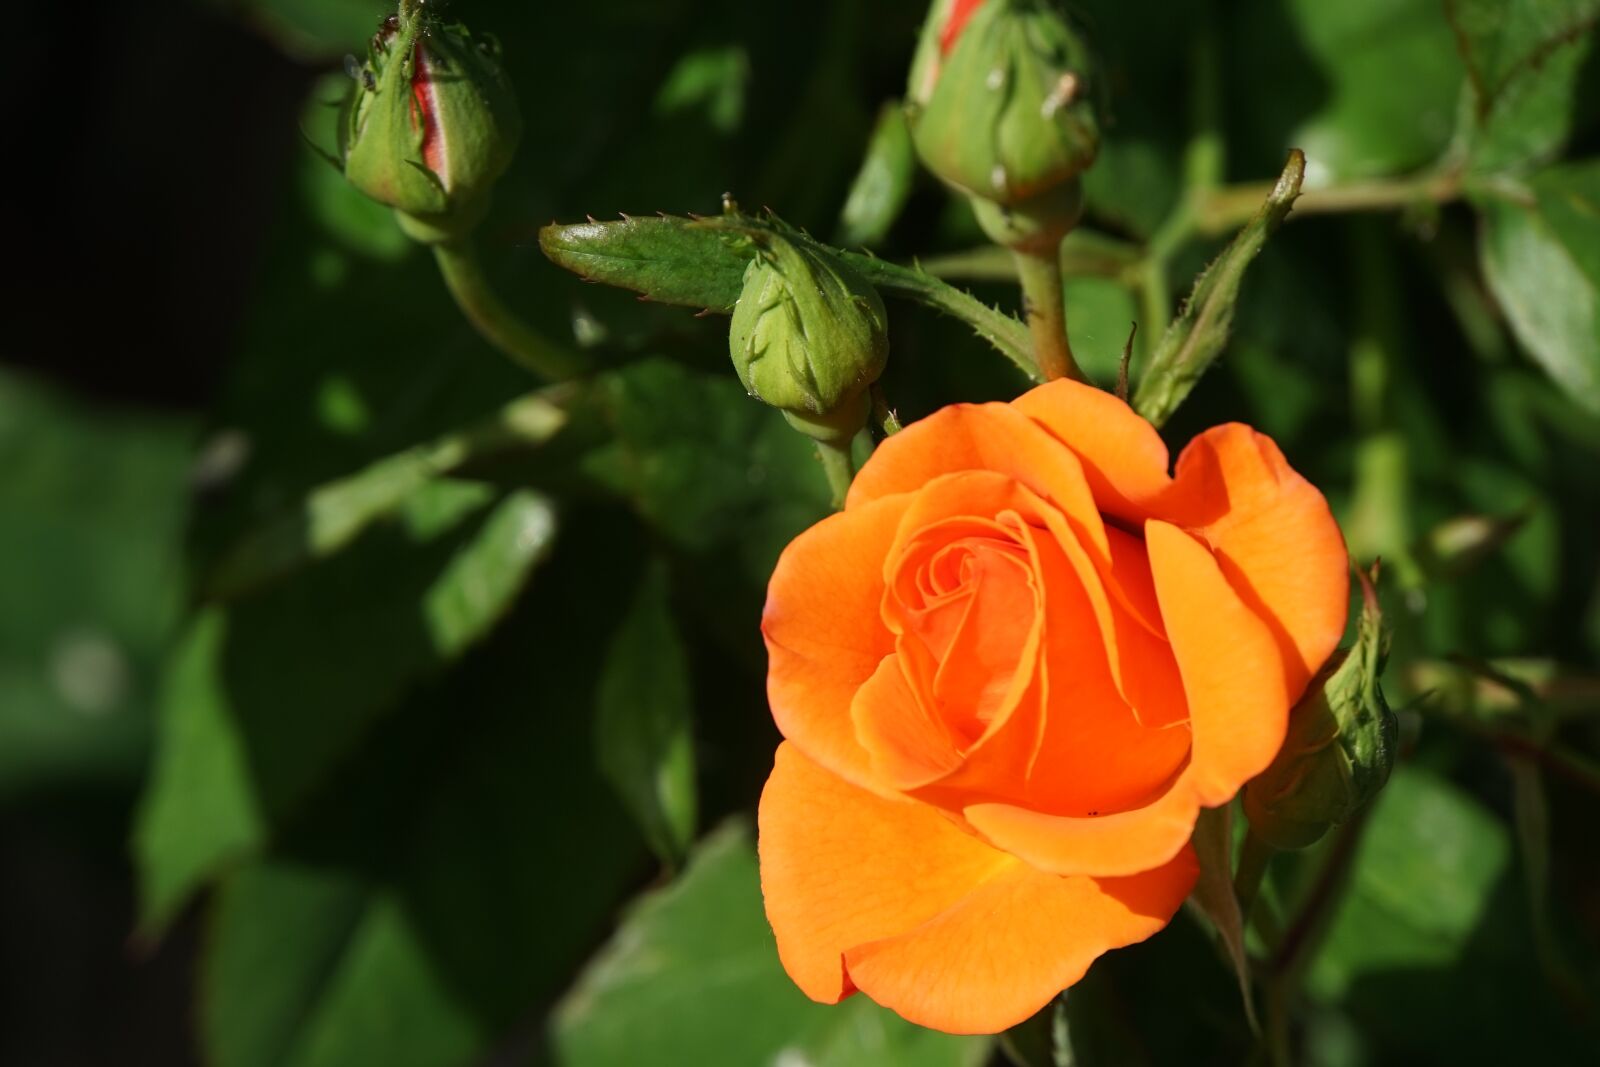 Sony E 18-200mm F3.5-6.3 OSS sample photo. Rose, flower, blossom photography